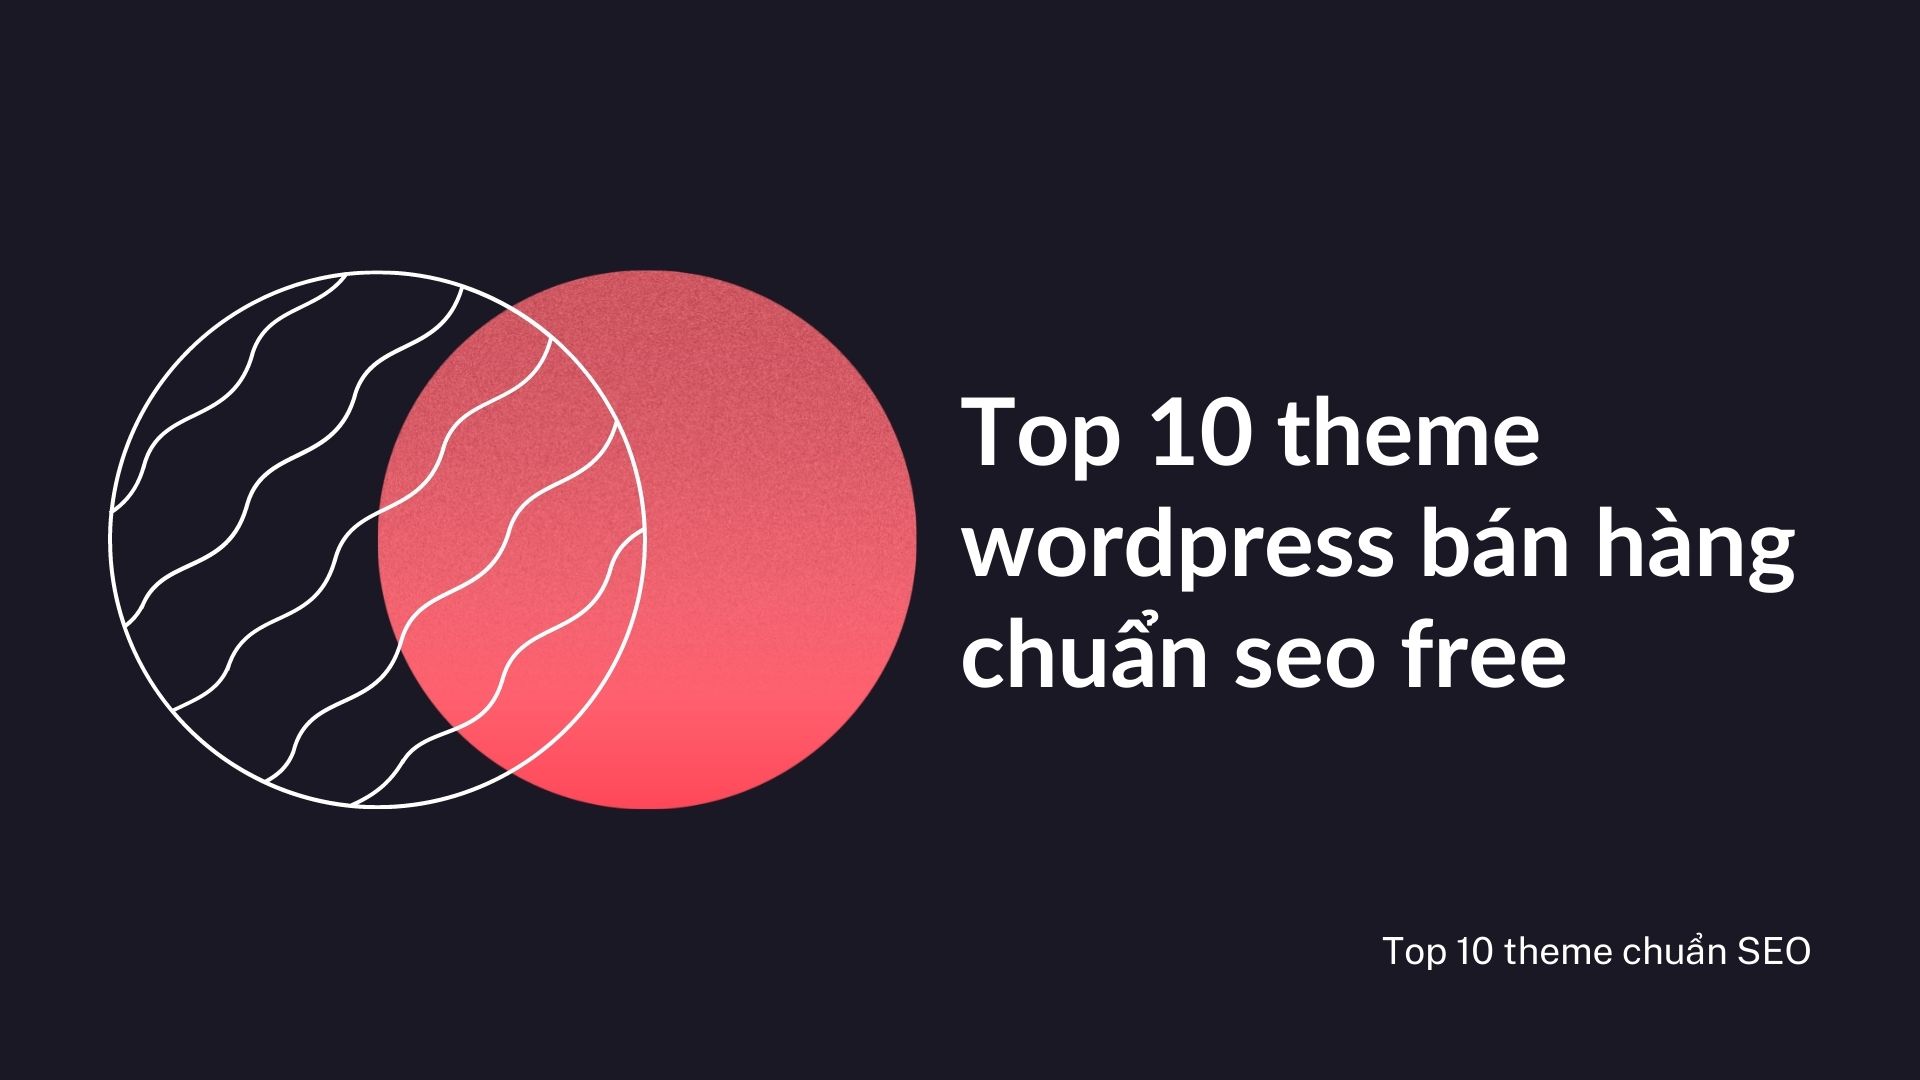 Top 10 theme wordpress bán hàng chuẩn seo free